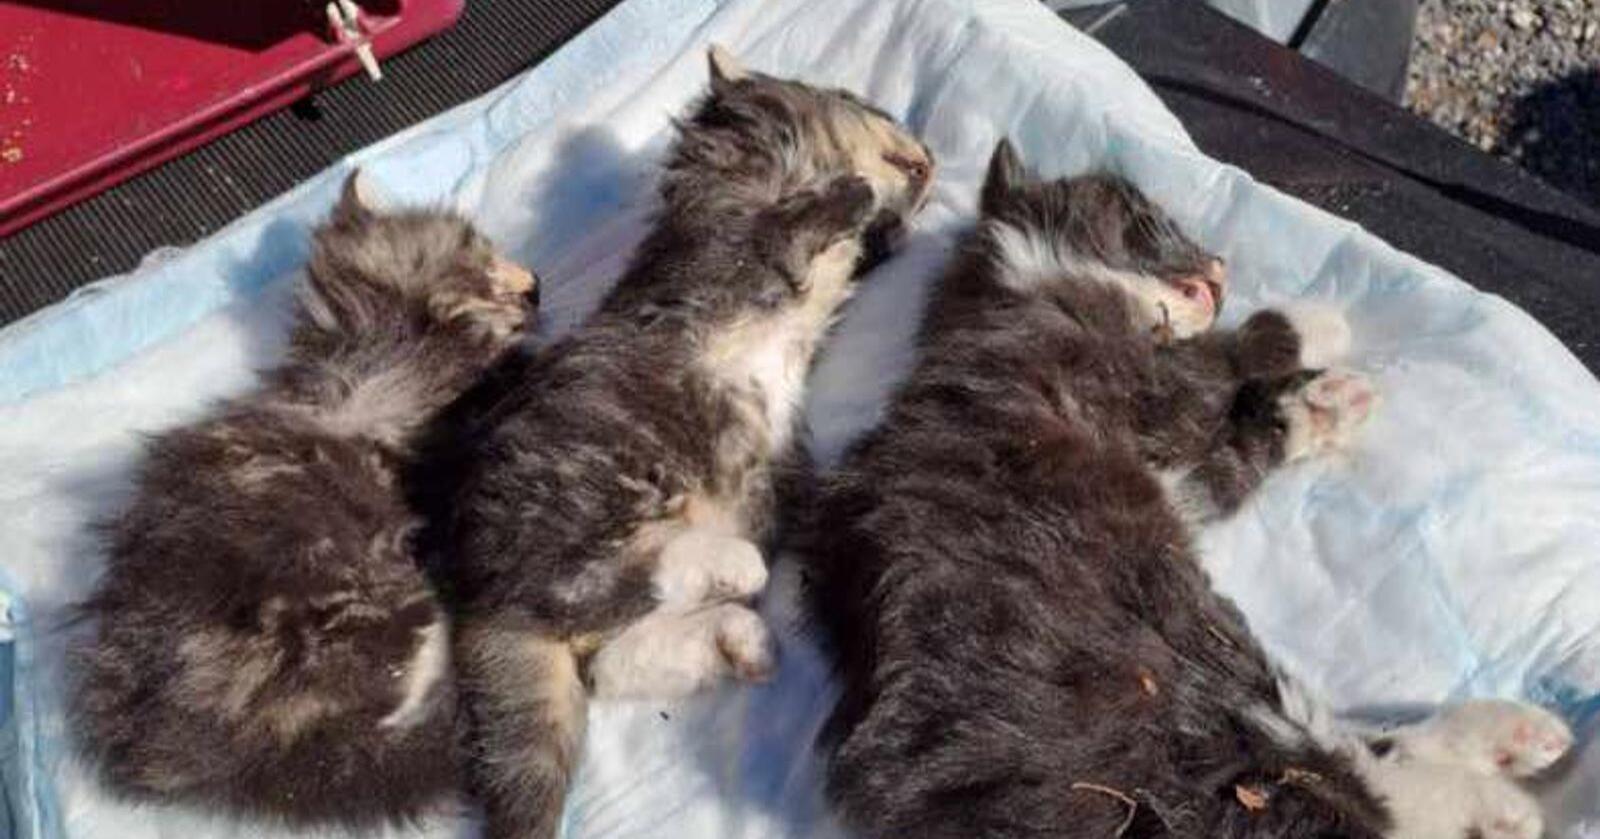 De tre kattungene ble funnet døde under en pall. Foto: Dyrebeskyttelsen Norge Fredrikstad og omegn